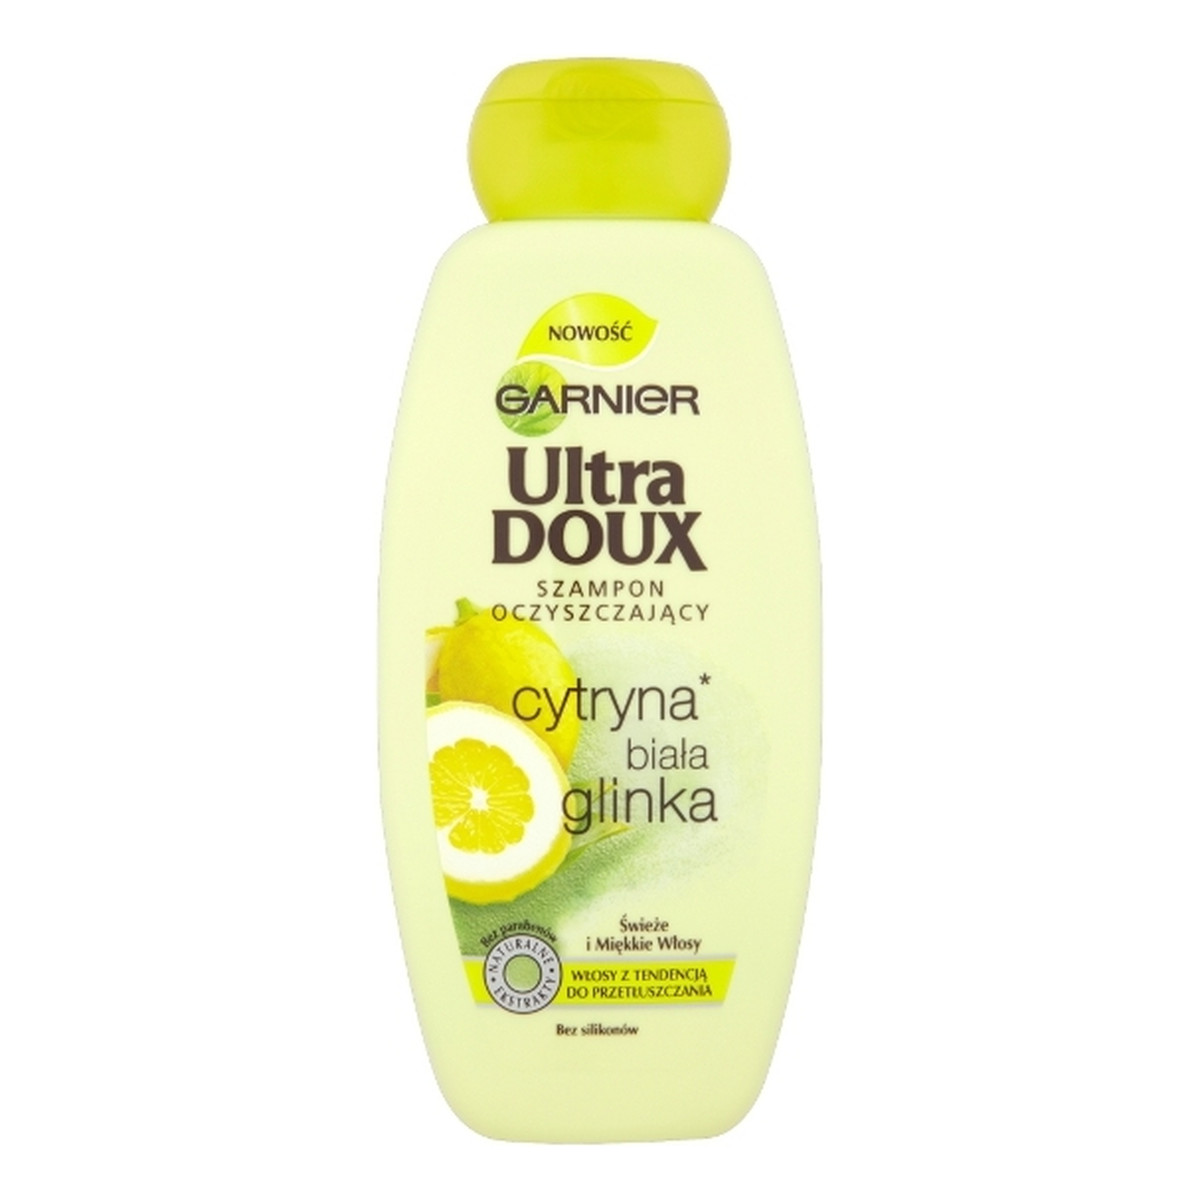 Garnier Cytryna i Biała Glinka Ultra Doux Szampon Do Włosów Oczyszczający 400ml